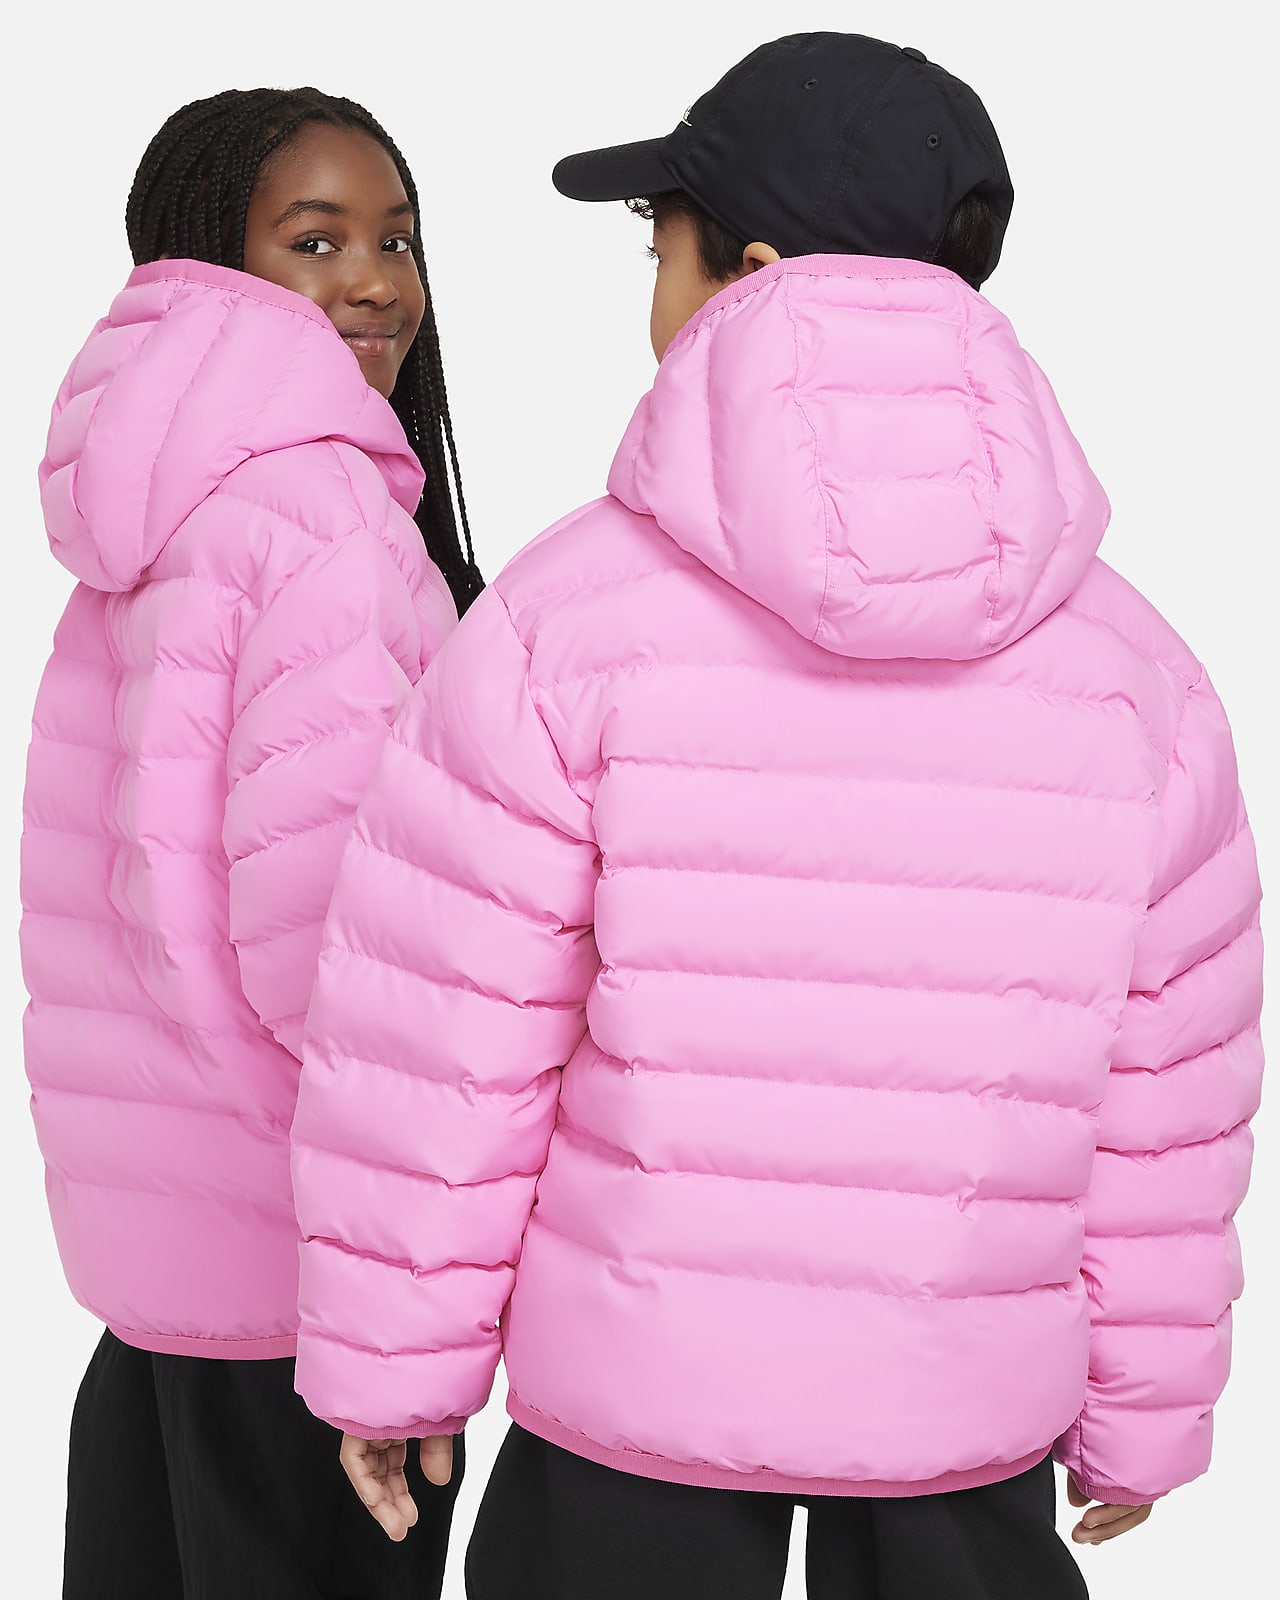 Lightweight Fill Loose Synthetic Jacket. Big Kids\' Hooded Nike Sportswear